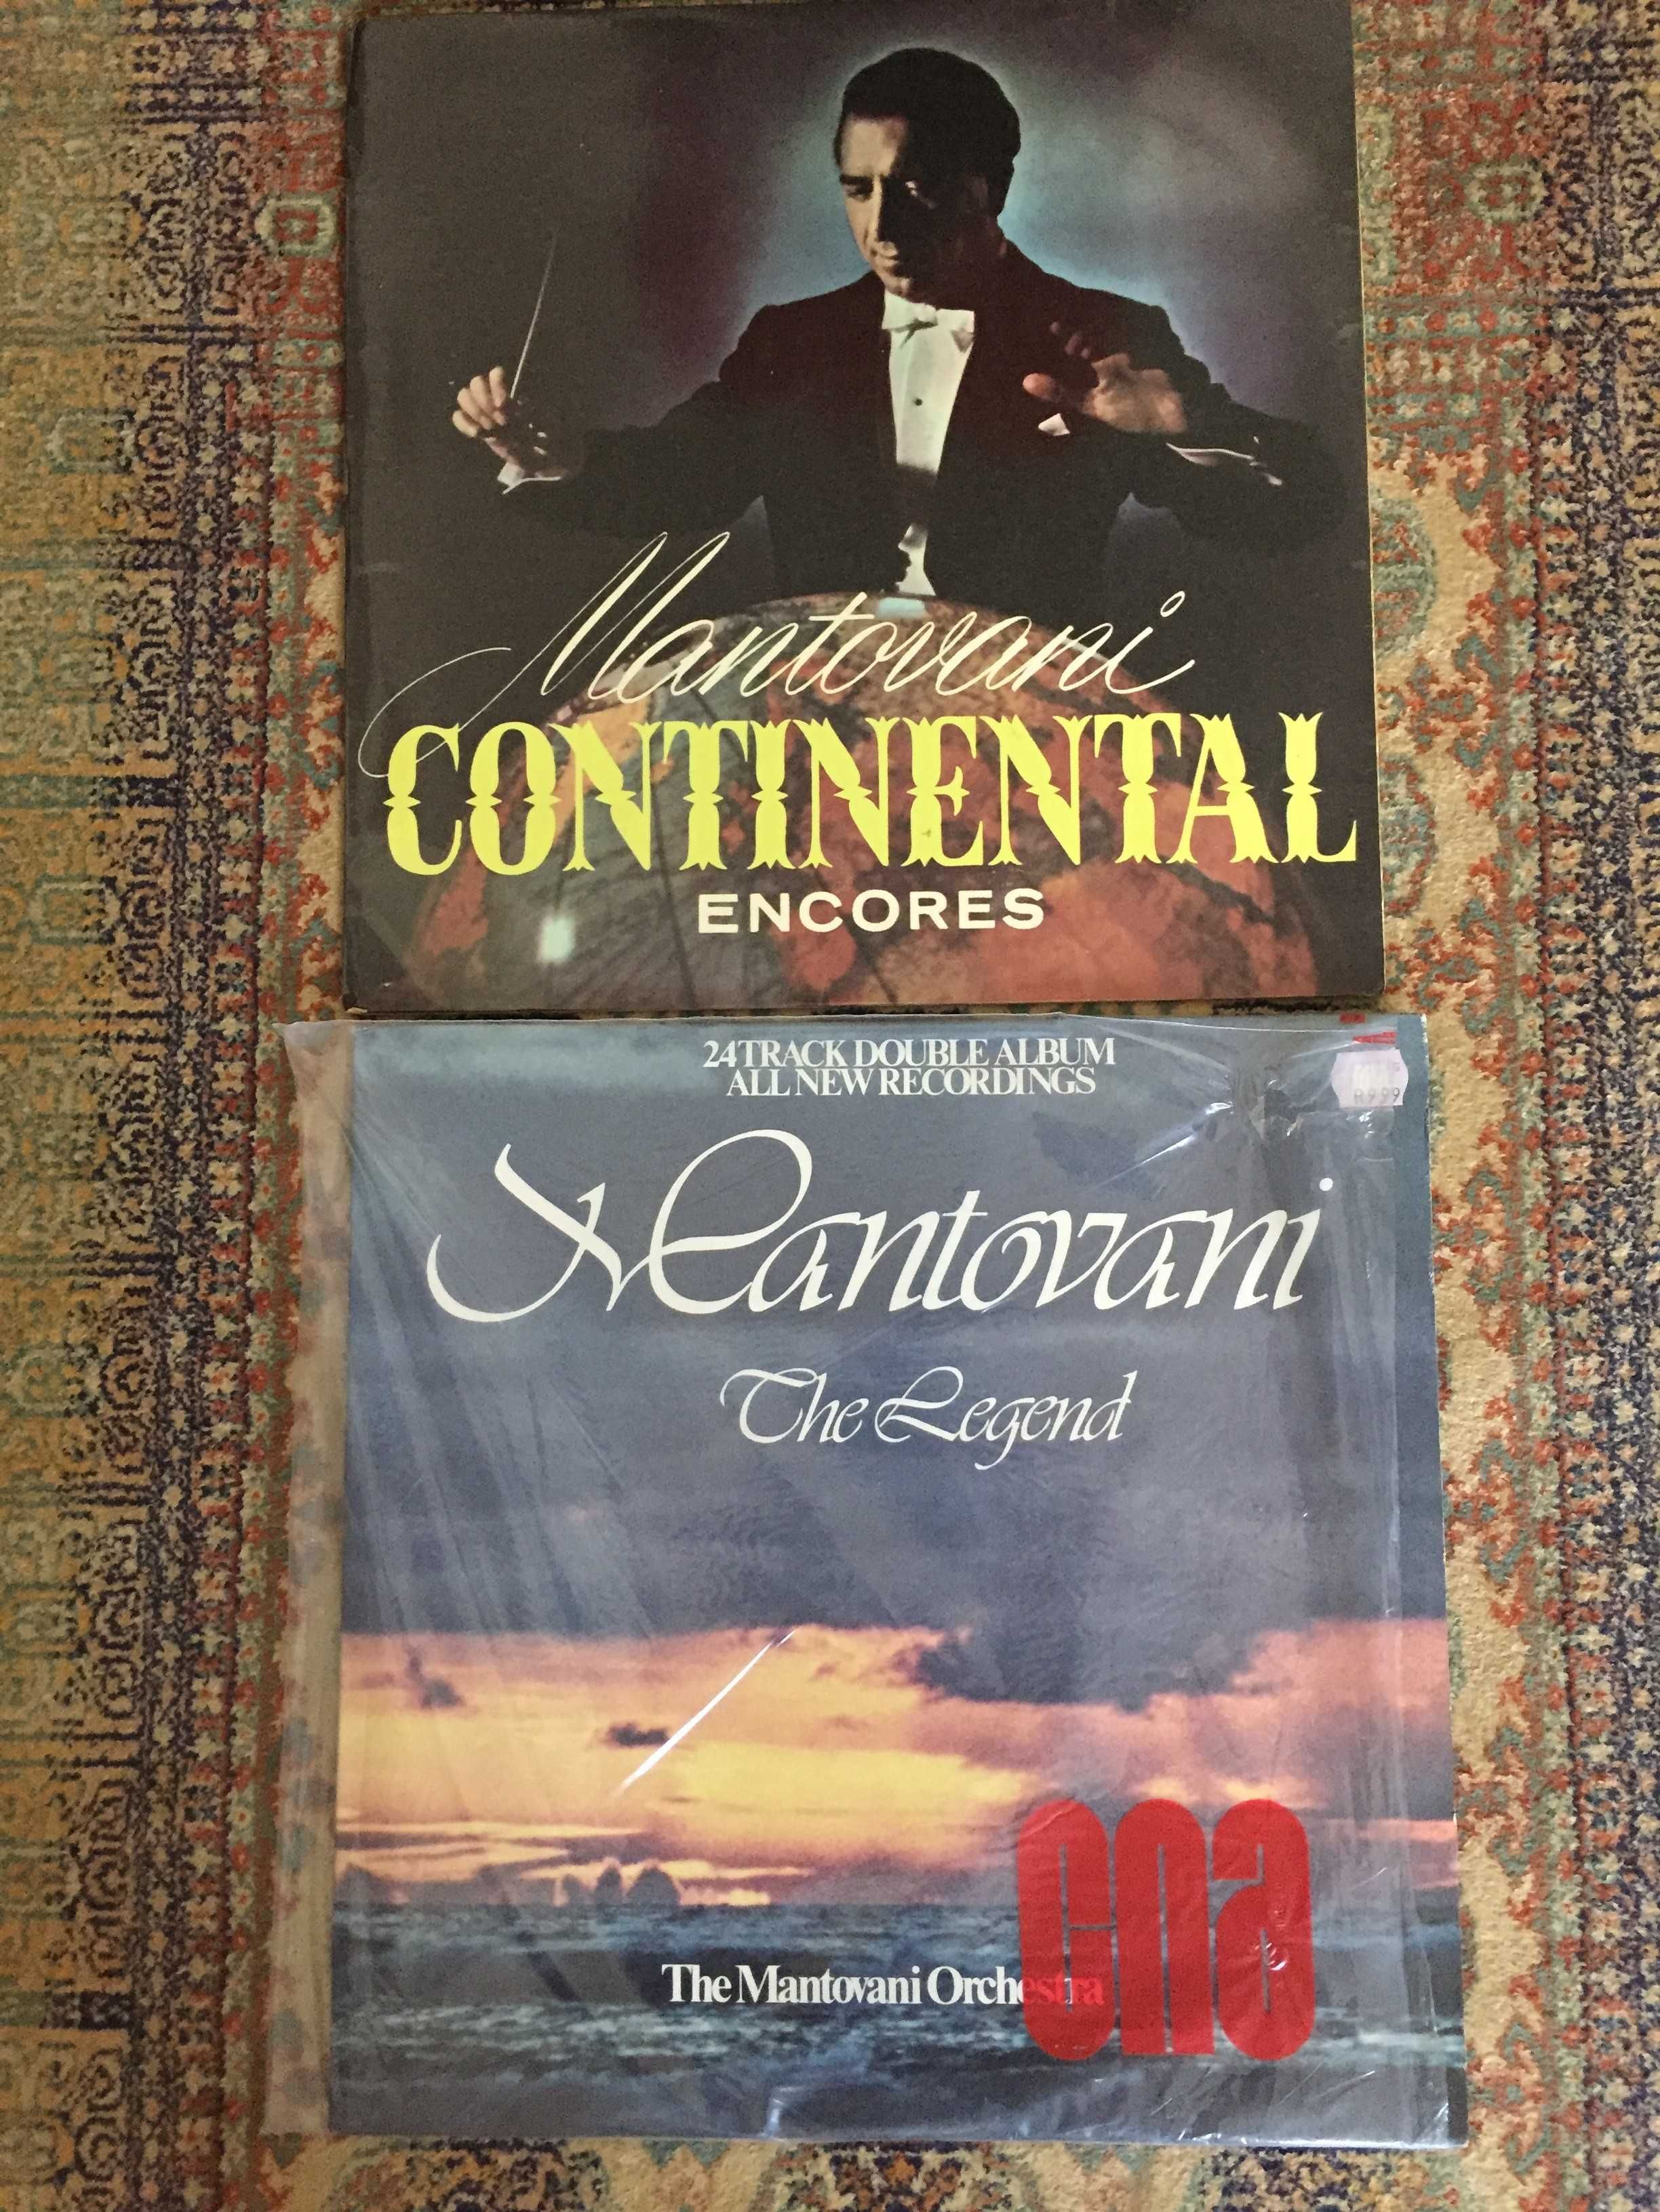 2 Discos vinil da orquestra do maestro Mantovani